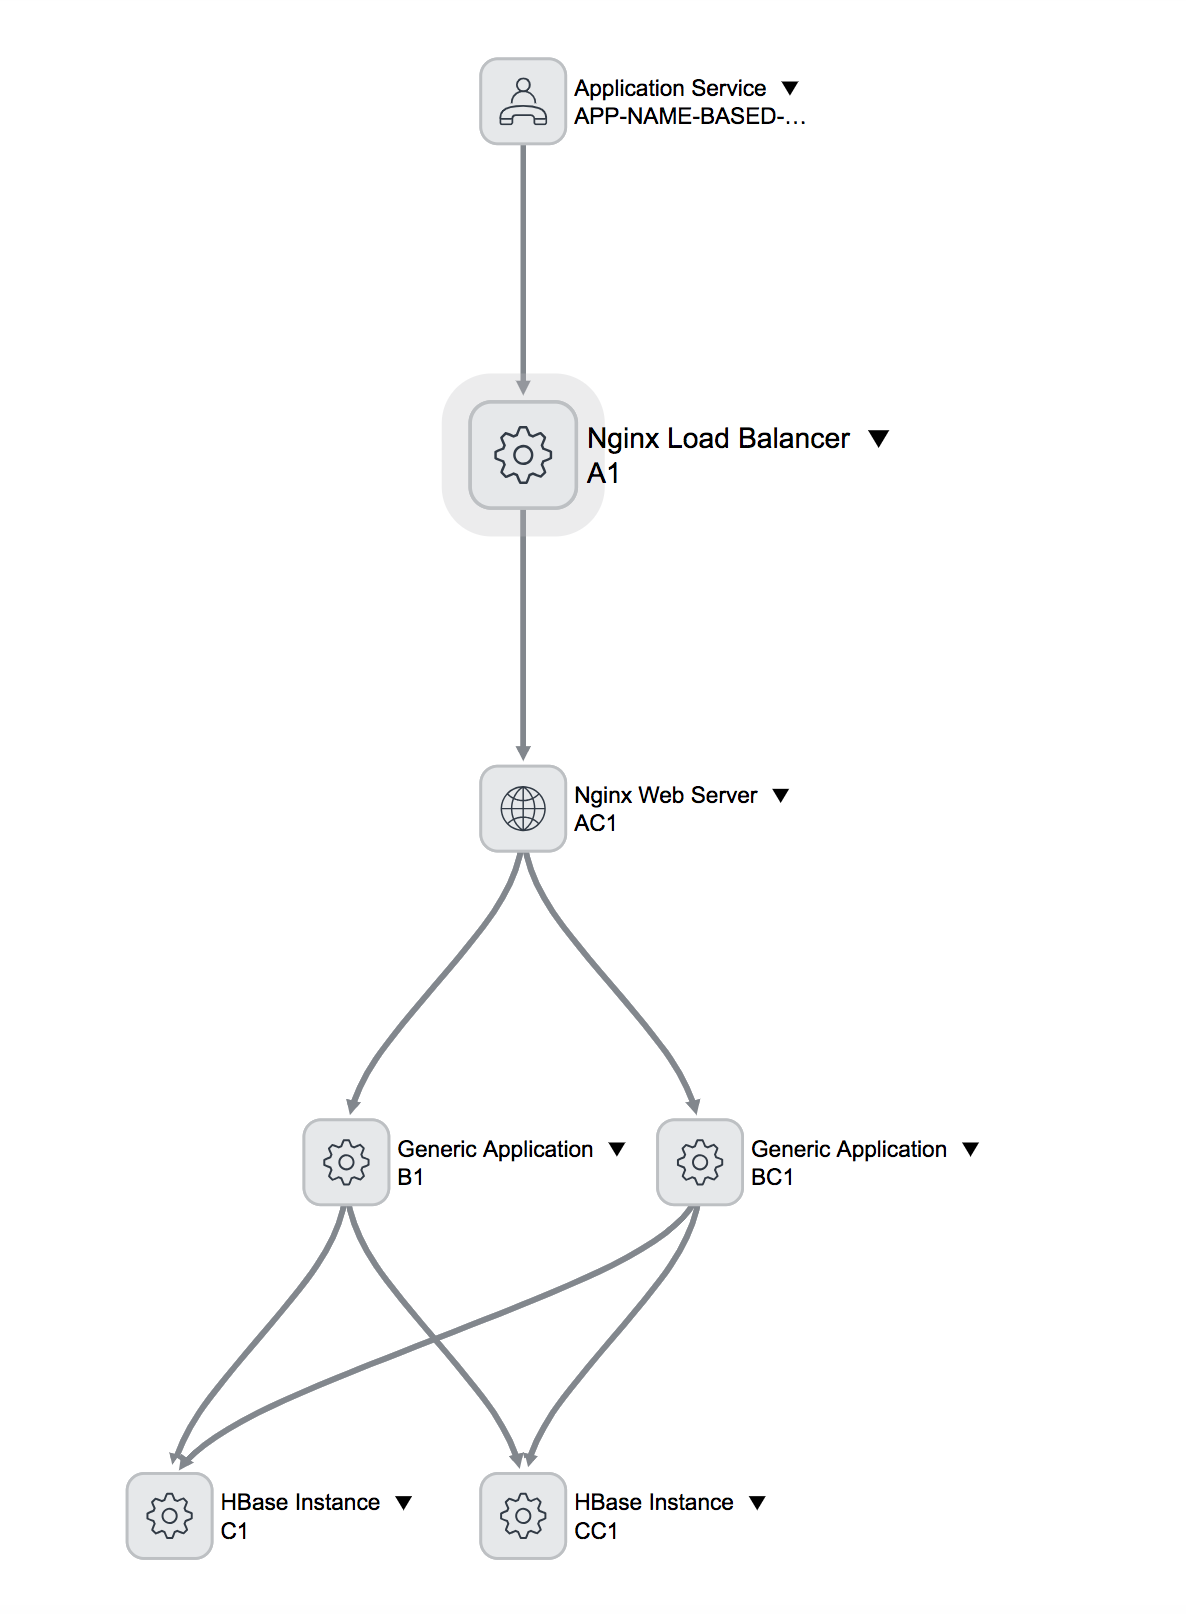 Eine grafische Darstellung zur Beschreibung der Topologie einer benutzerdefinierten CMDB-Konfigurationsdatei.